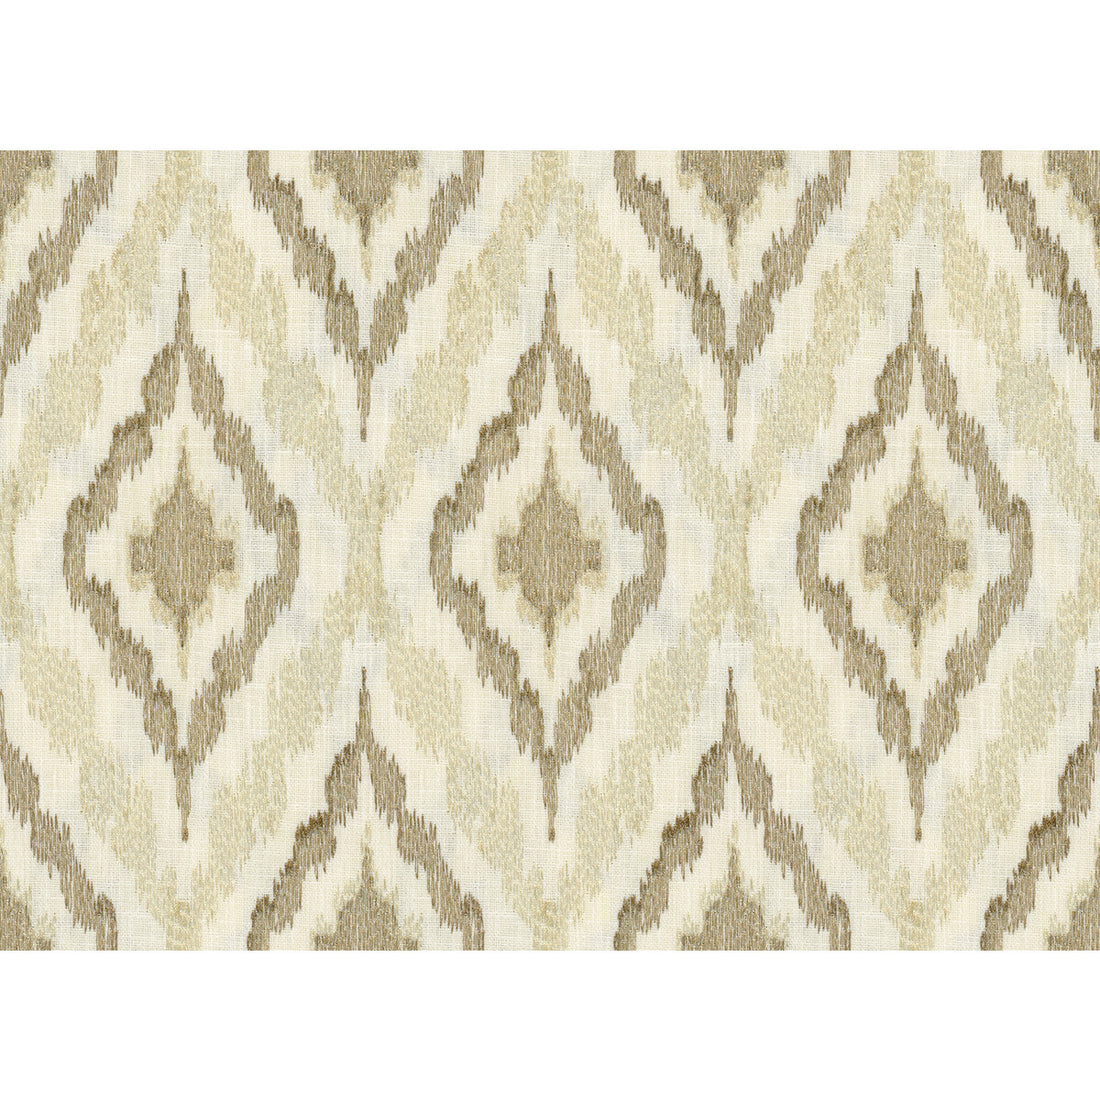 Kravet Design fabric in 34539-16 color - pattern 34539.16.0 - by Kravet Design